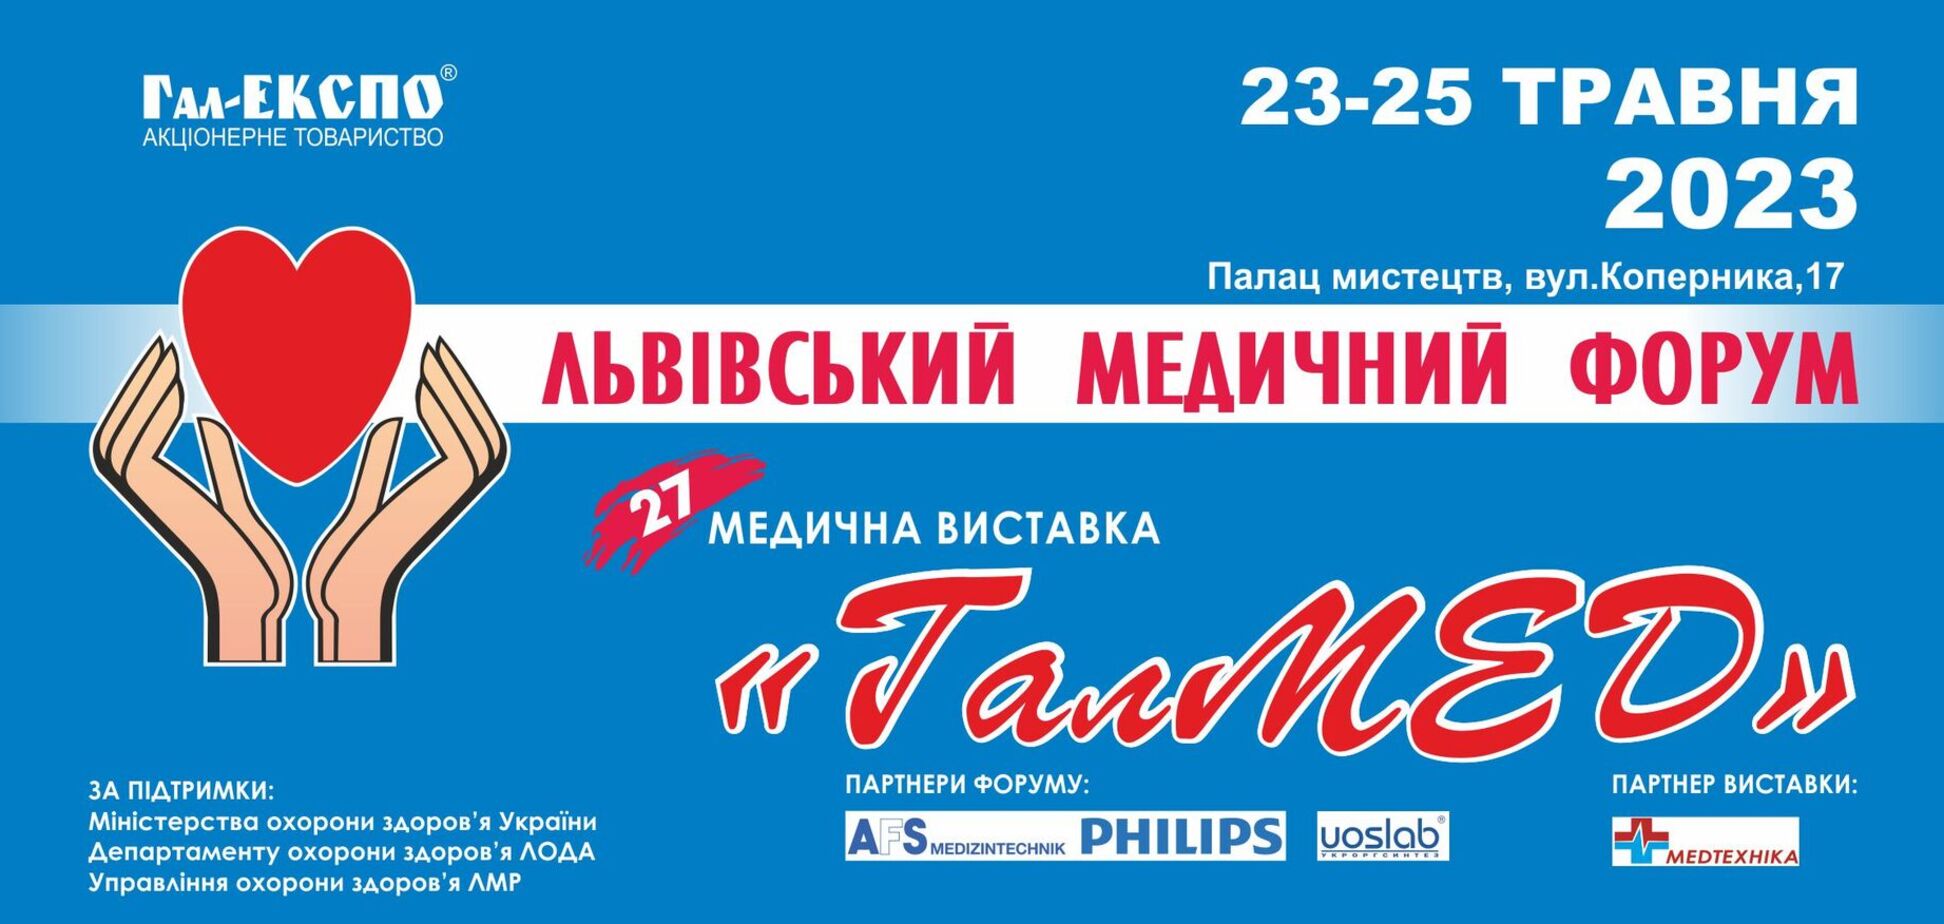 23-25 травня 2023 року у Львівському палаці мистецтв відбудеться XXVII Львівський медичний Форум та XXVII медична виставка 'ГалМЕД'